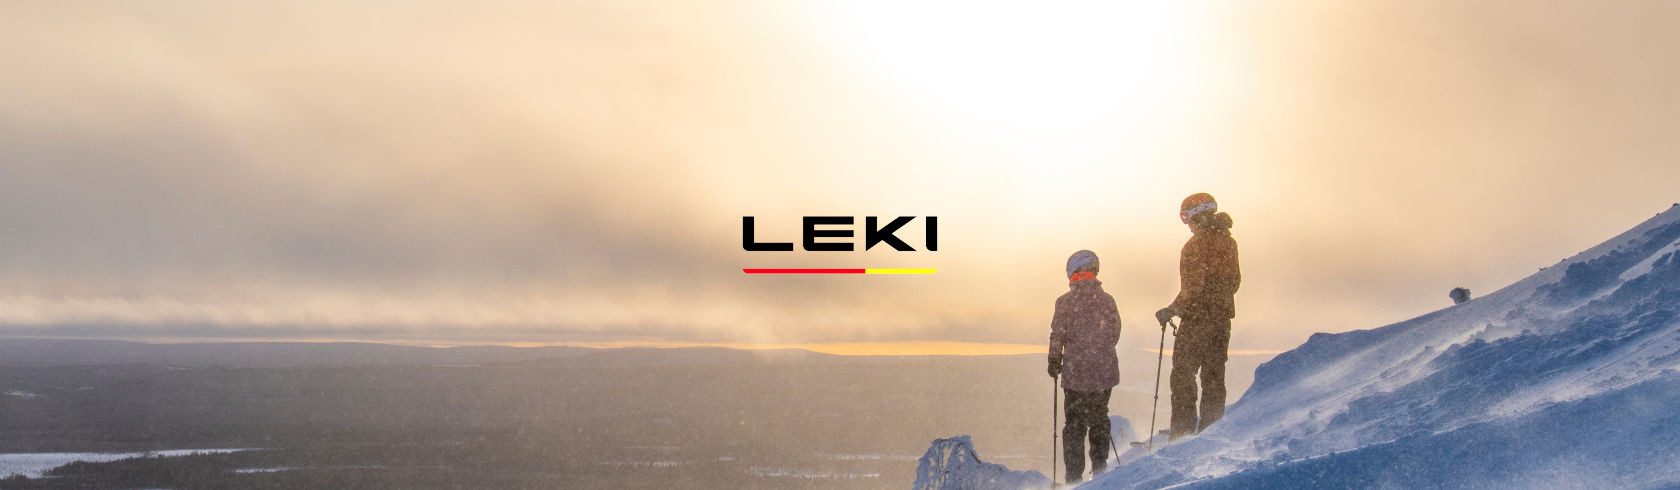 Leki brand logo